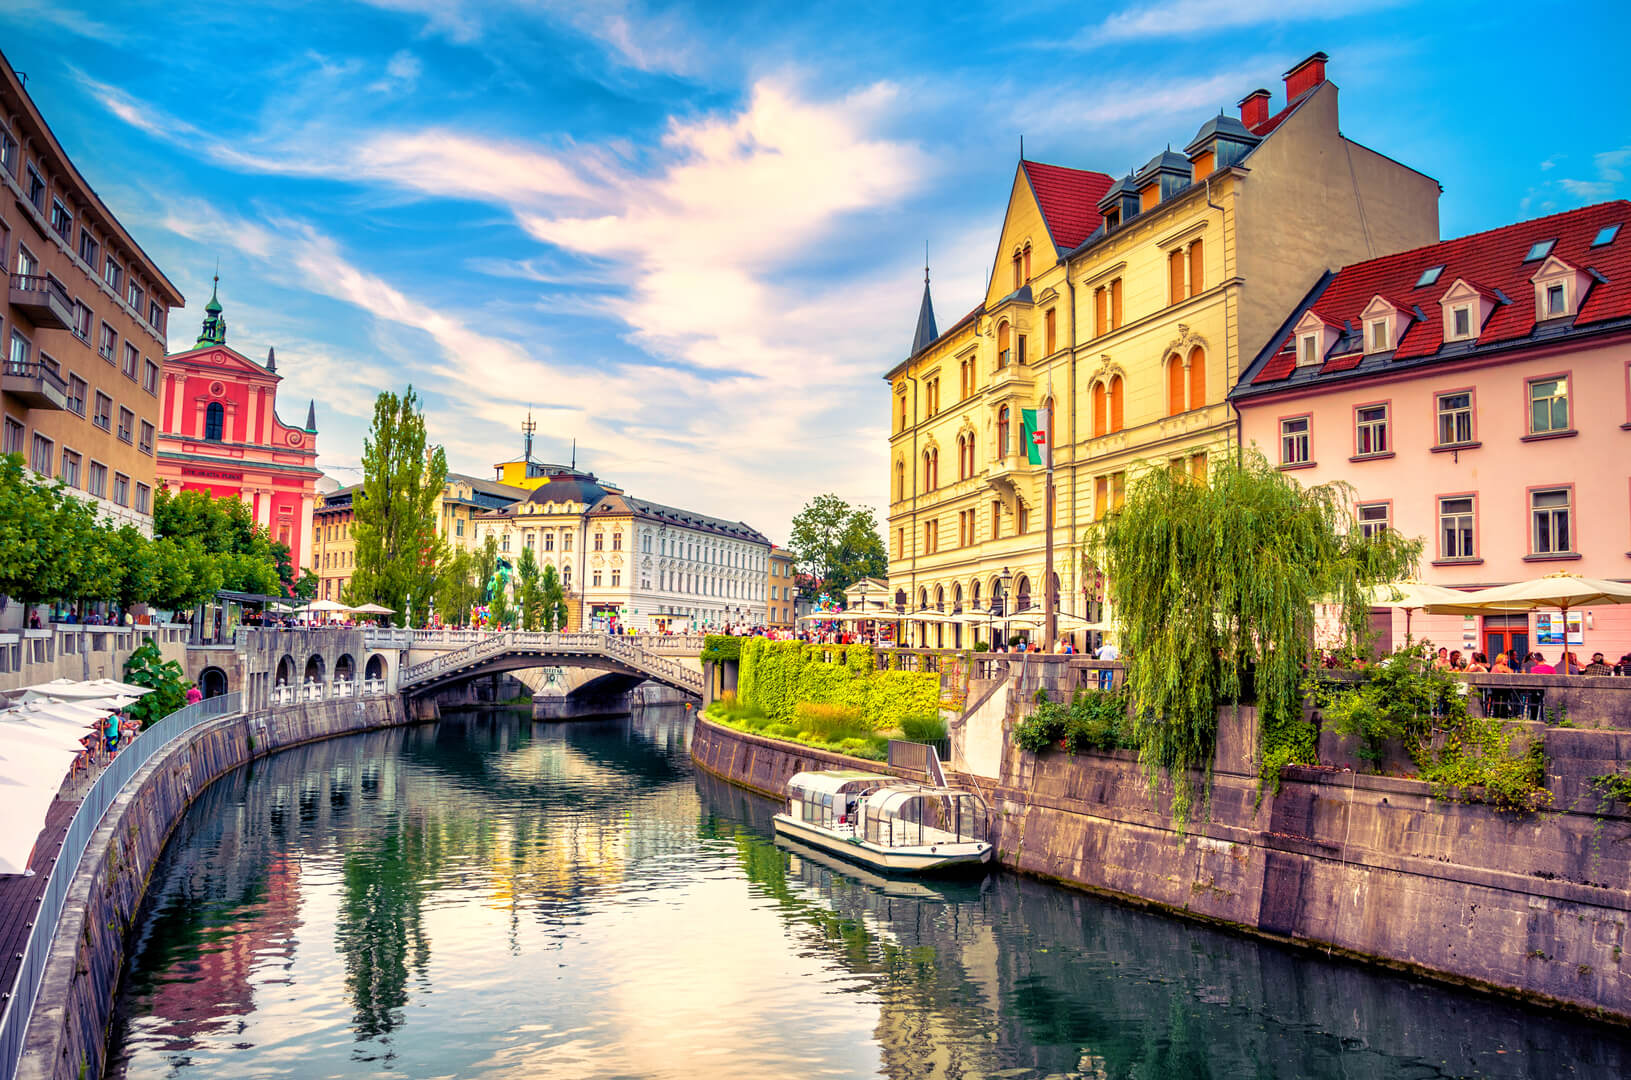 Vue sur le canal de la rivière Ljubljanica dans la vieille ville de Ljubljana. Ljubljana est la capitale de la Slovénie et une célèbre destination touristique européenne.